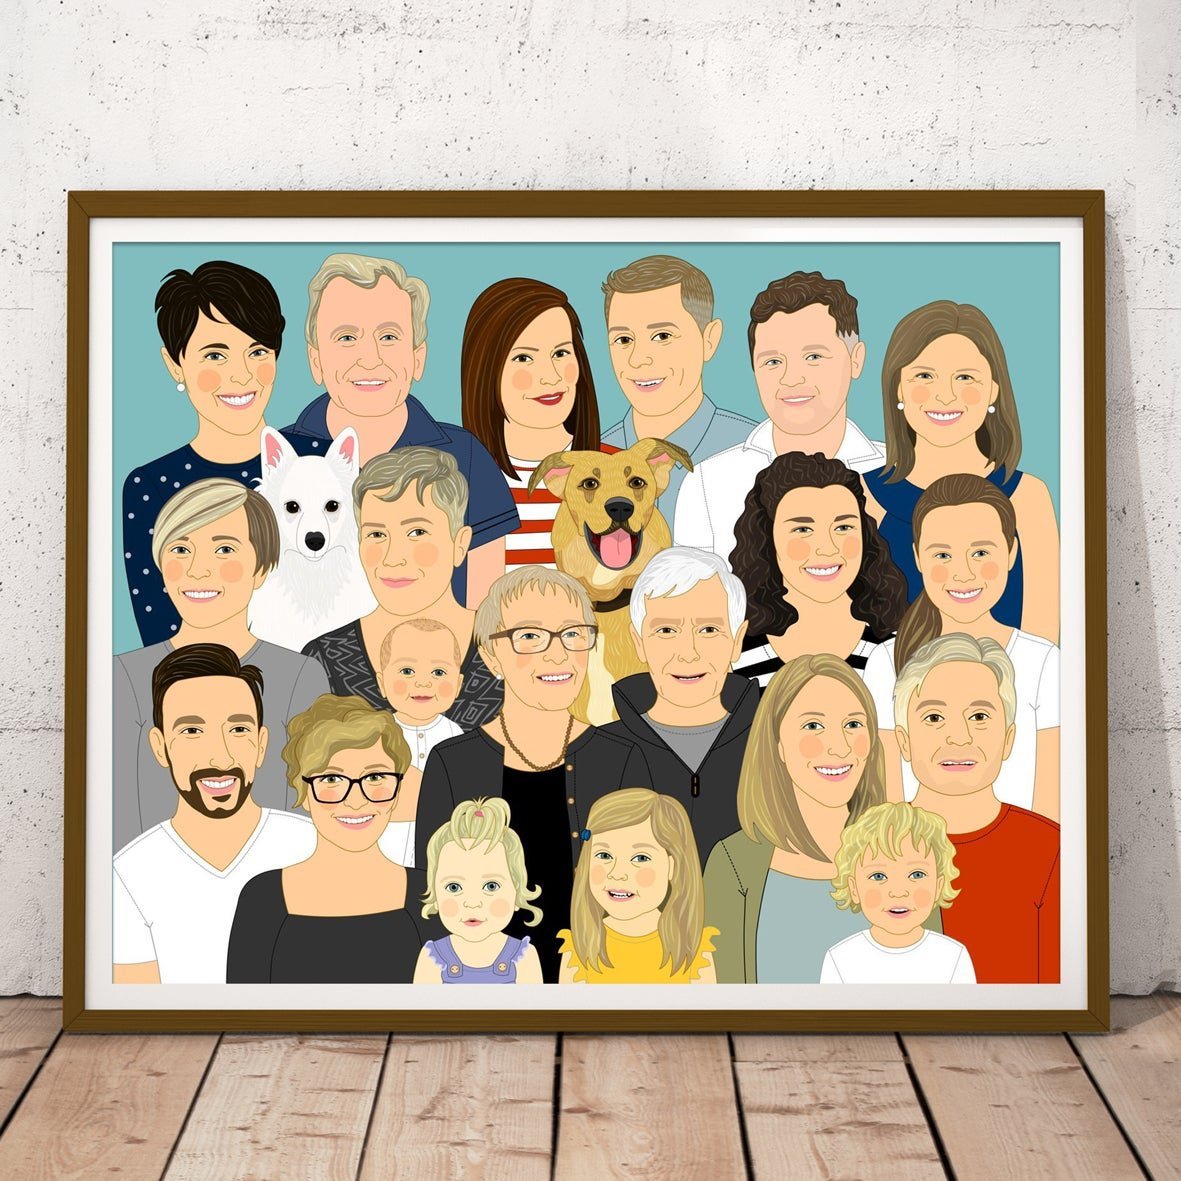 Родня родственник. Изображение большой семьи. Портрет большой семьи. Семейный портрет рисунок. Большая семья иллюстрация.